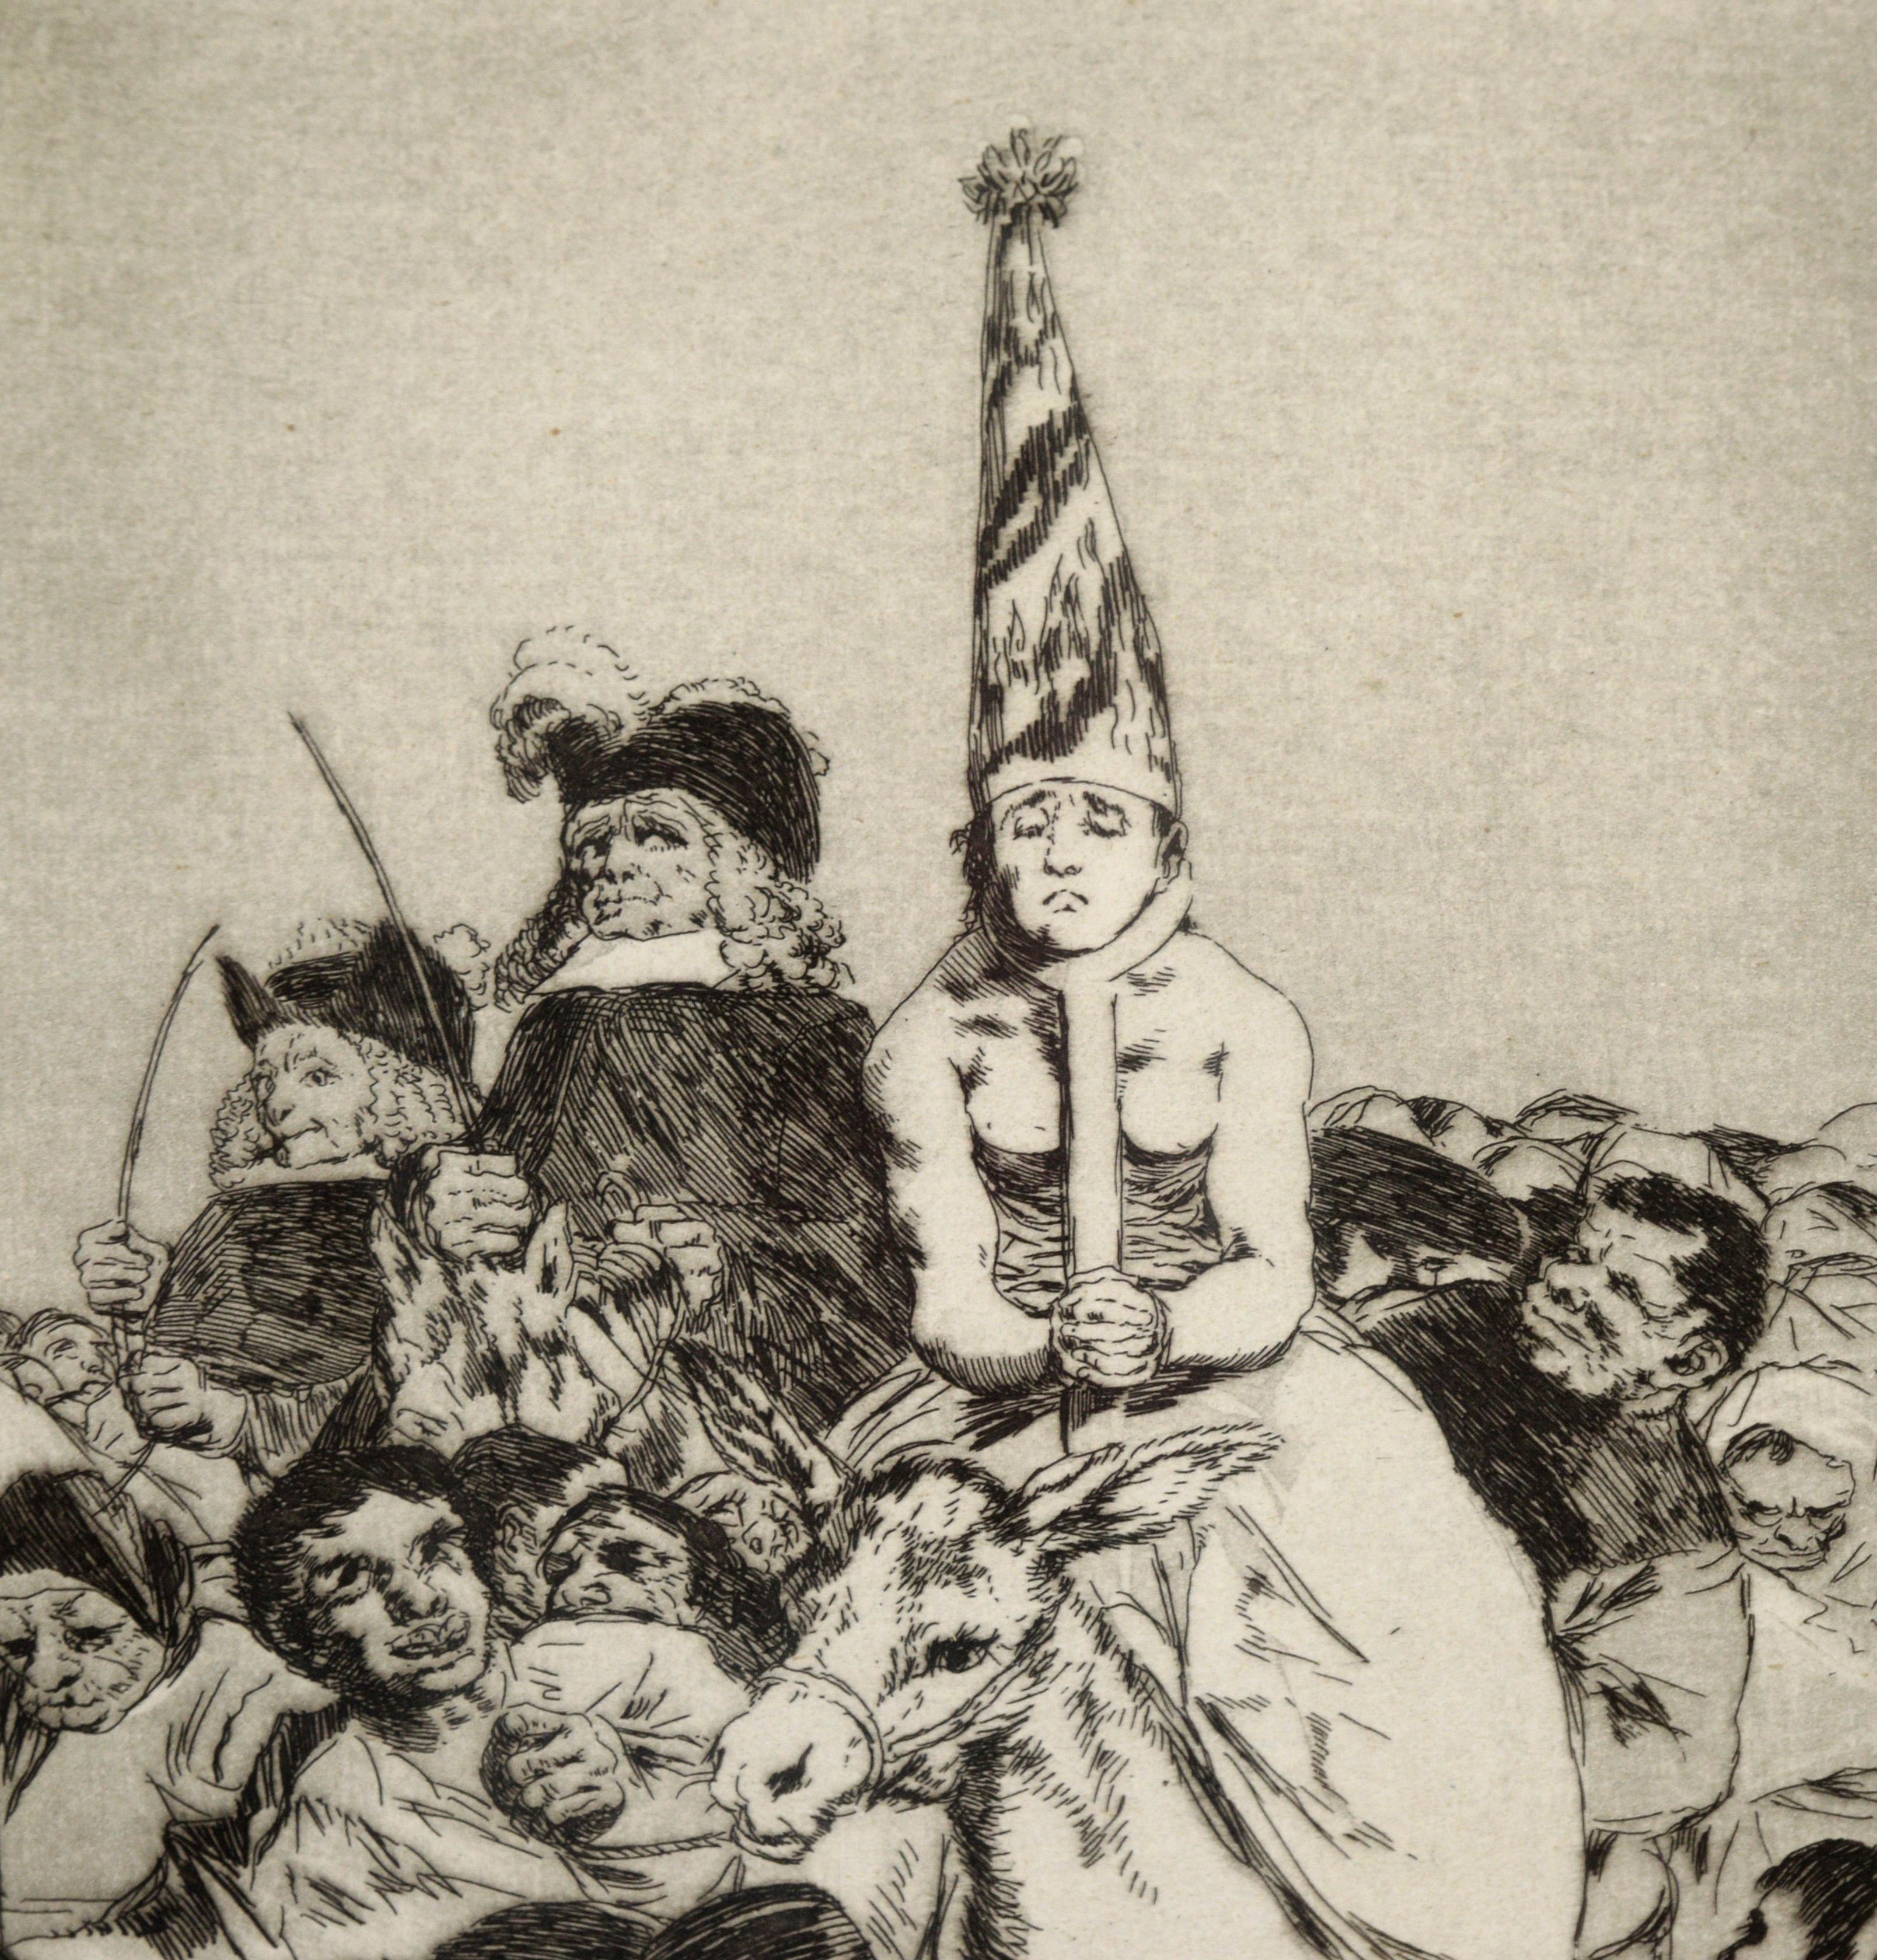 « Nohubo remedio » (Il n'y avait pas de souvenir) - eau-forte et aquatinte sur papier - Print de Francisco Goya